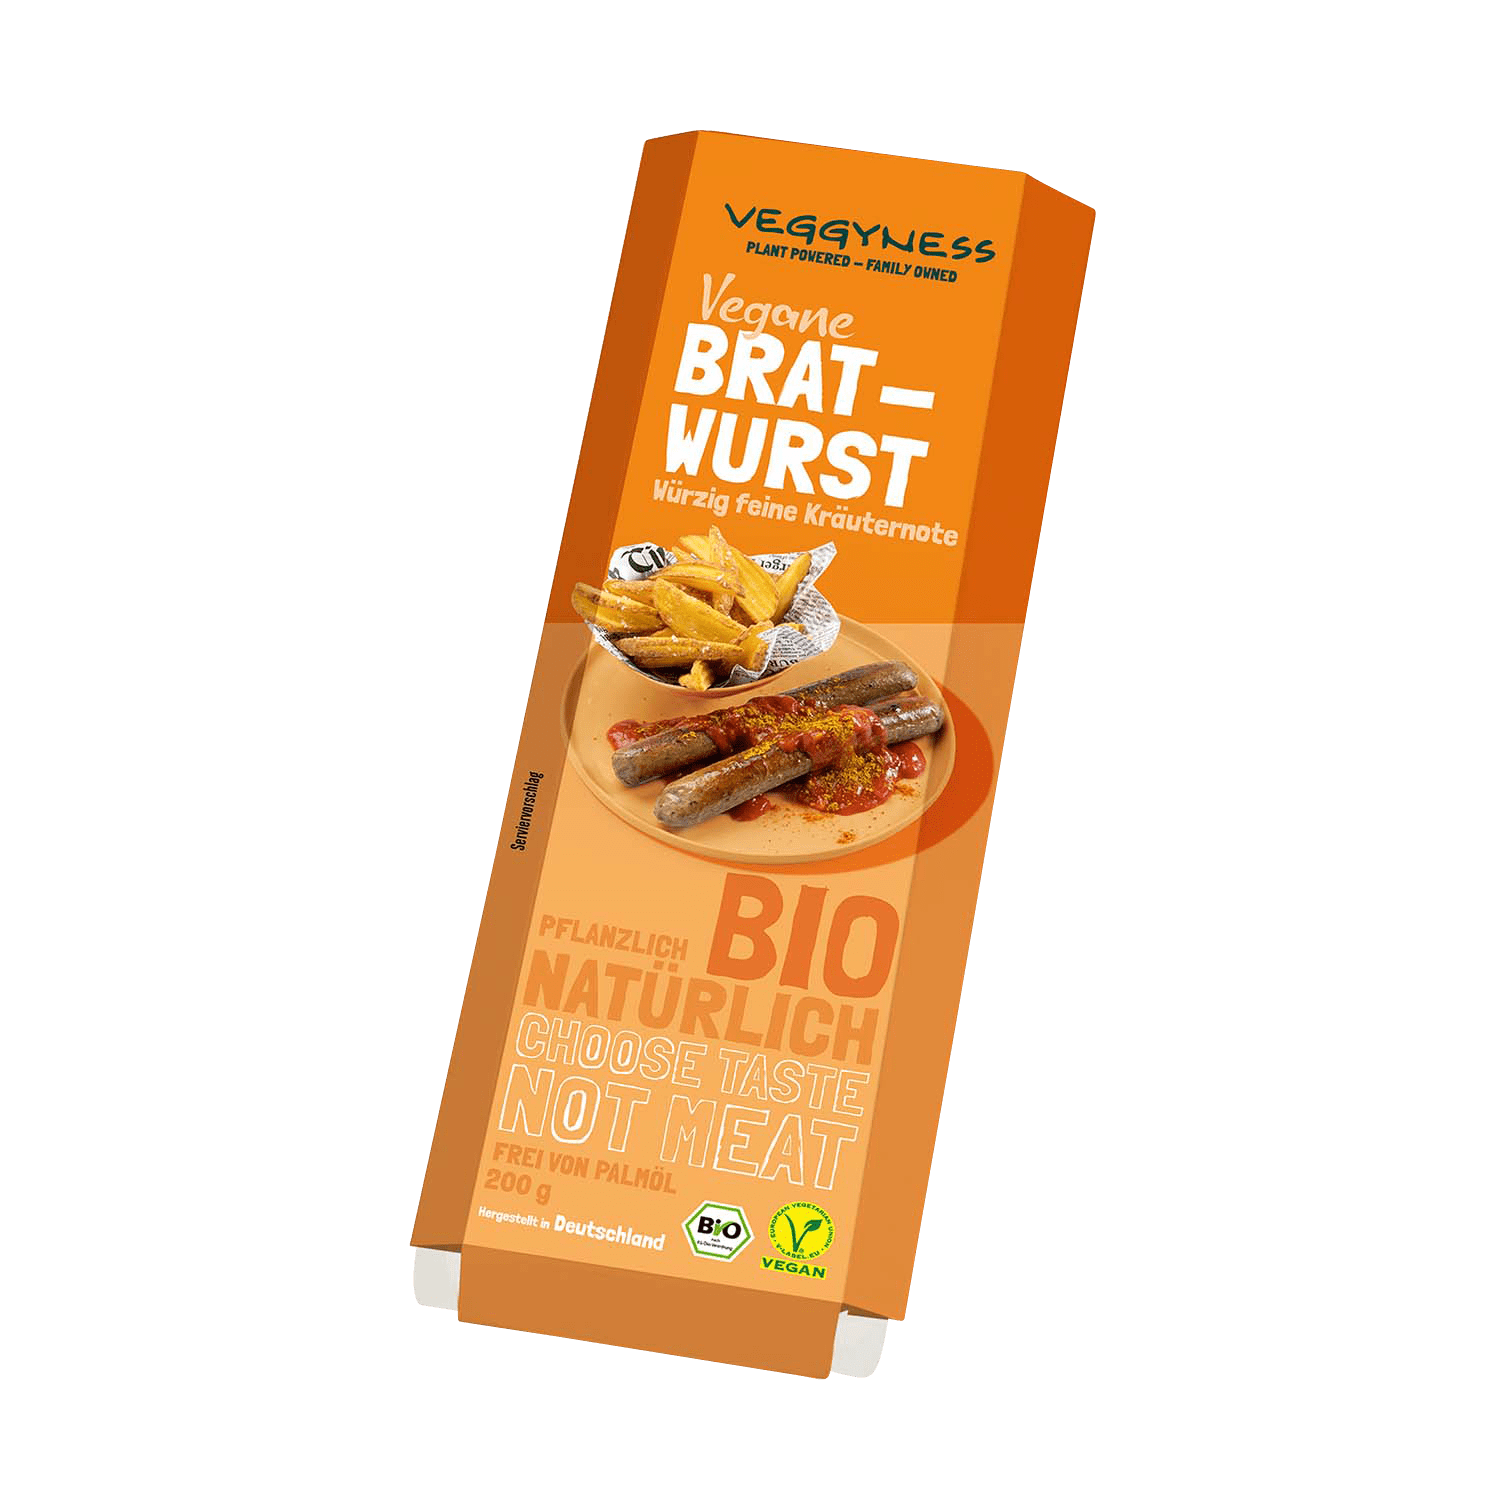 Vegane Bratwurst, BIO, 200g